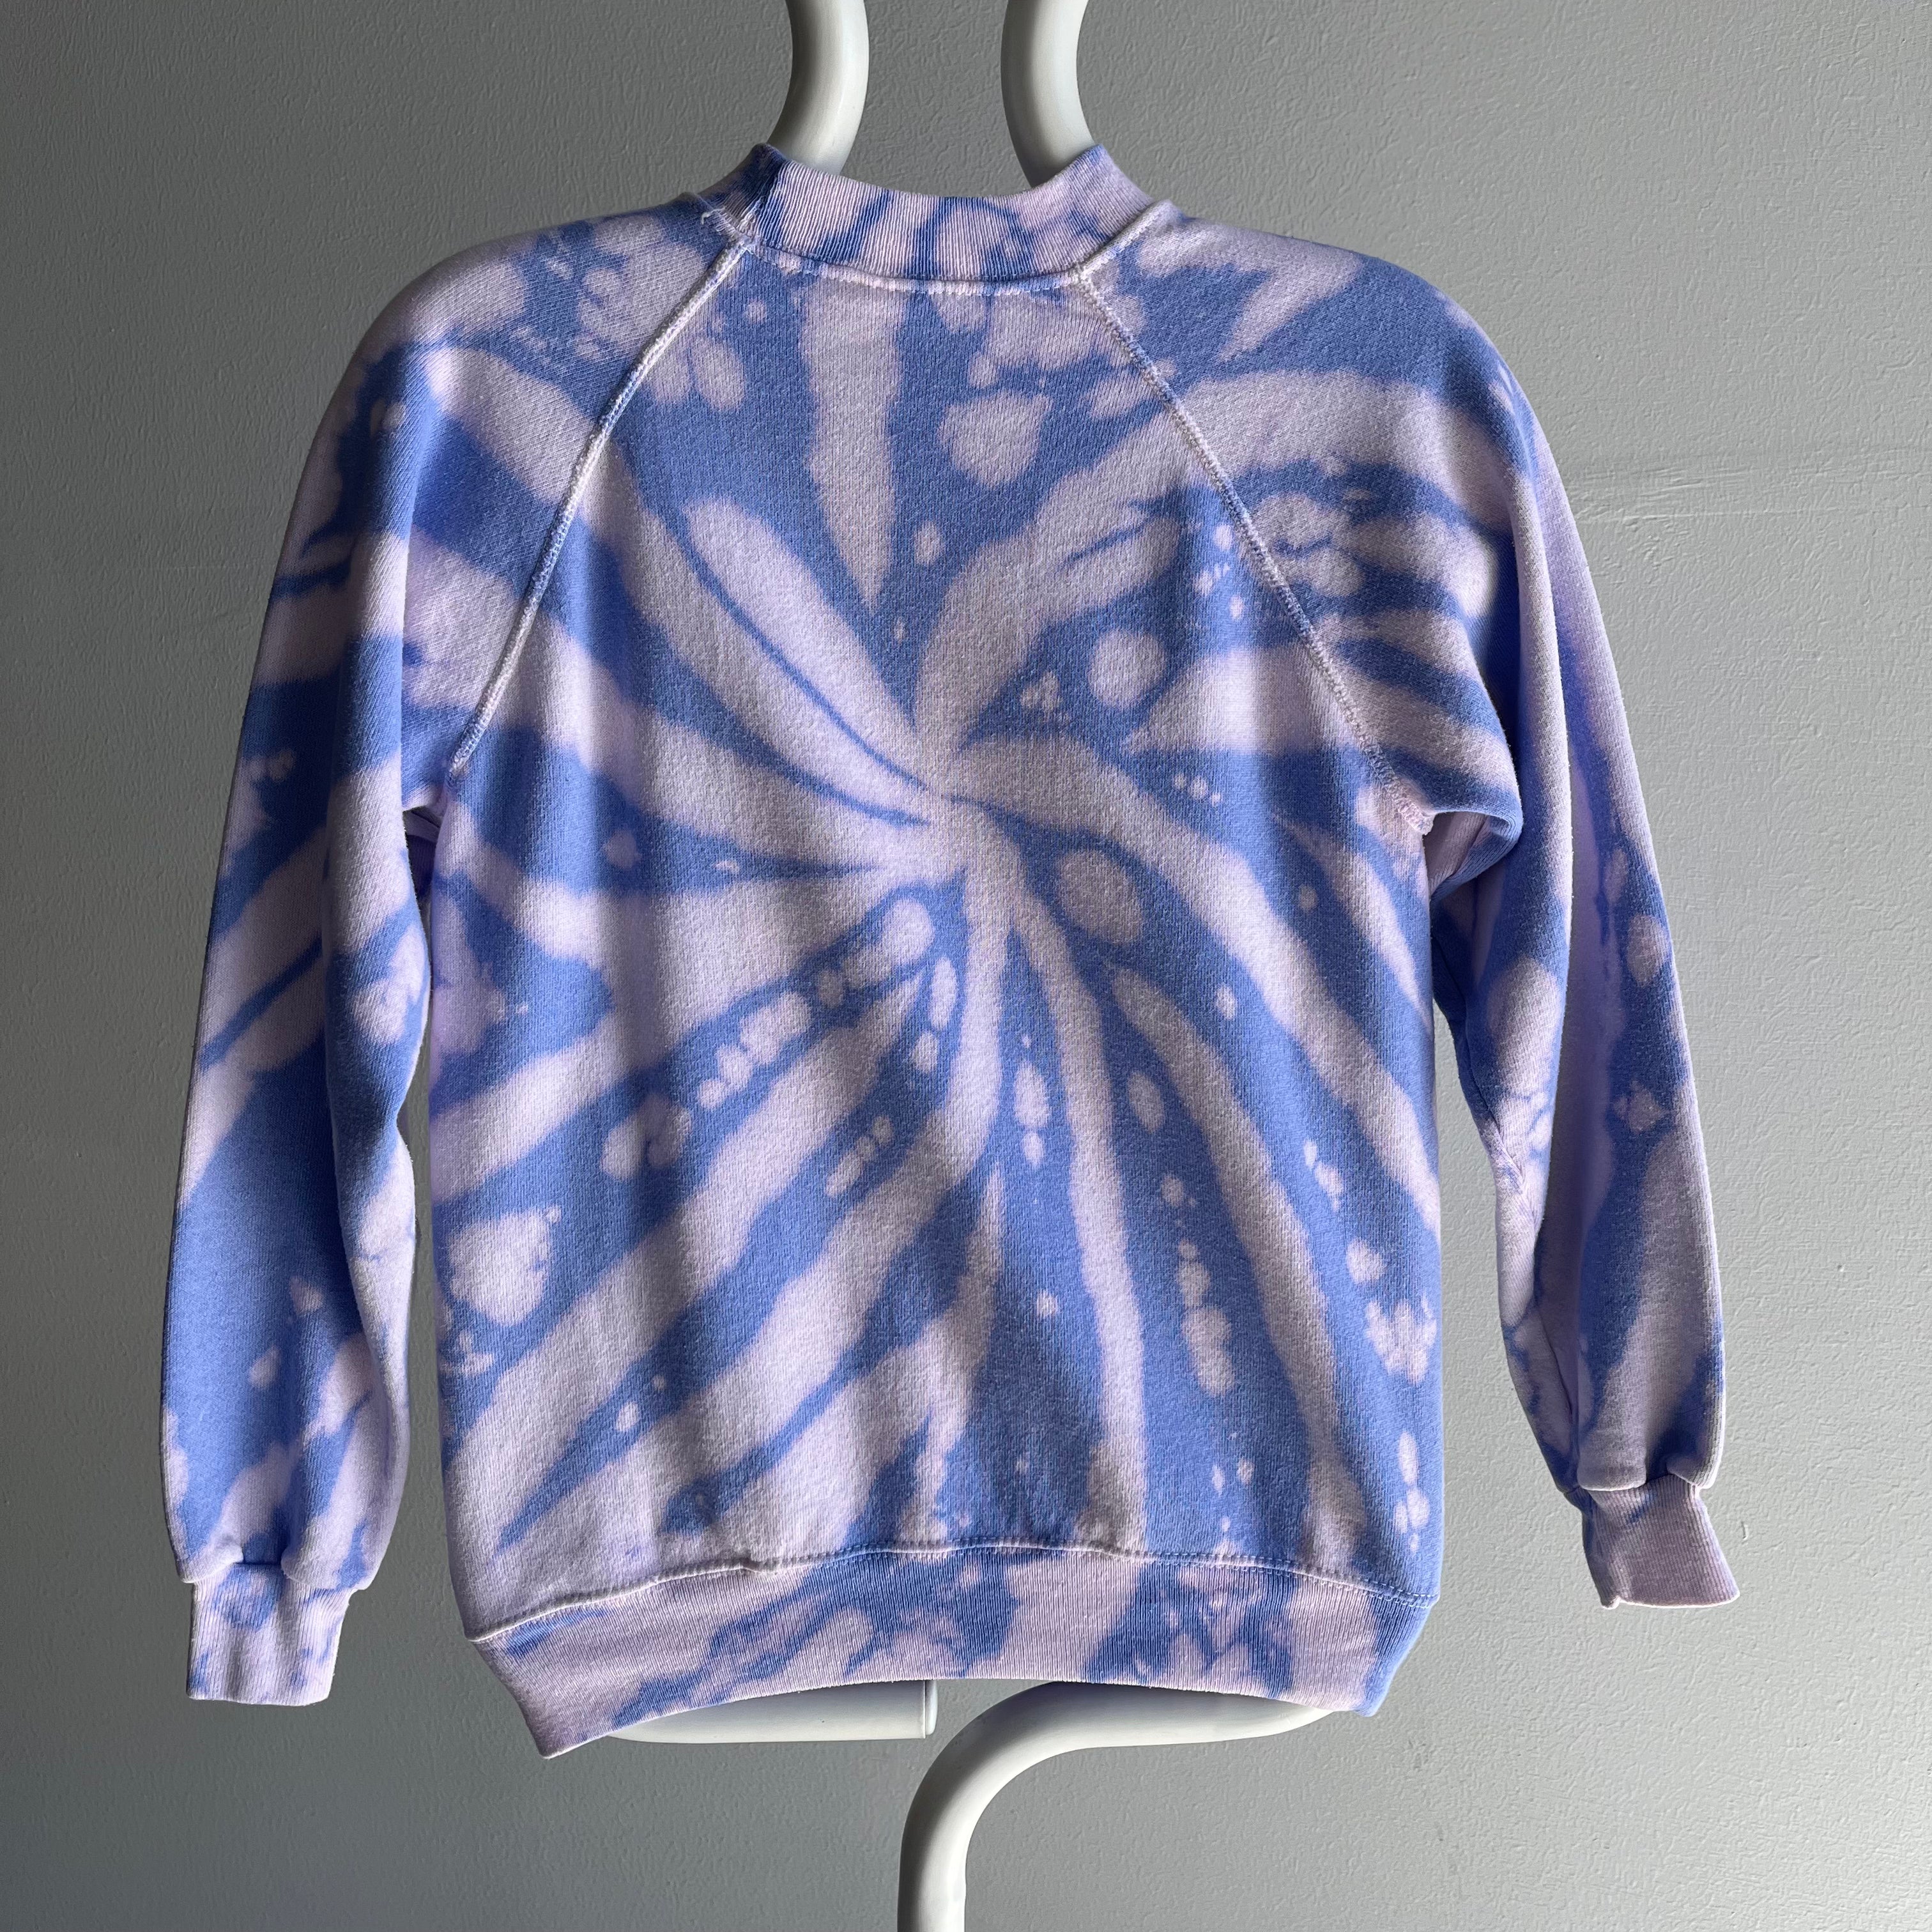 1980s Laurel Tie Dye Sweatshirt